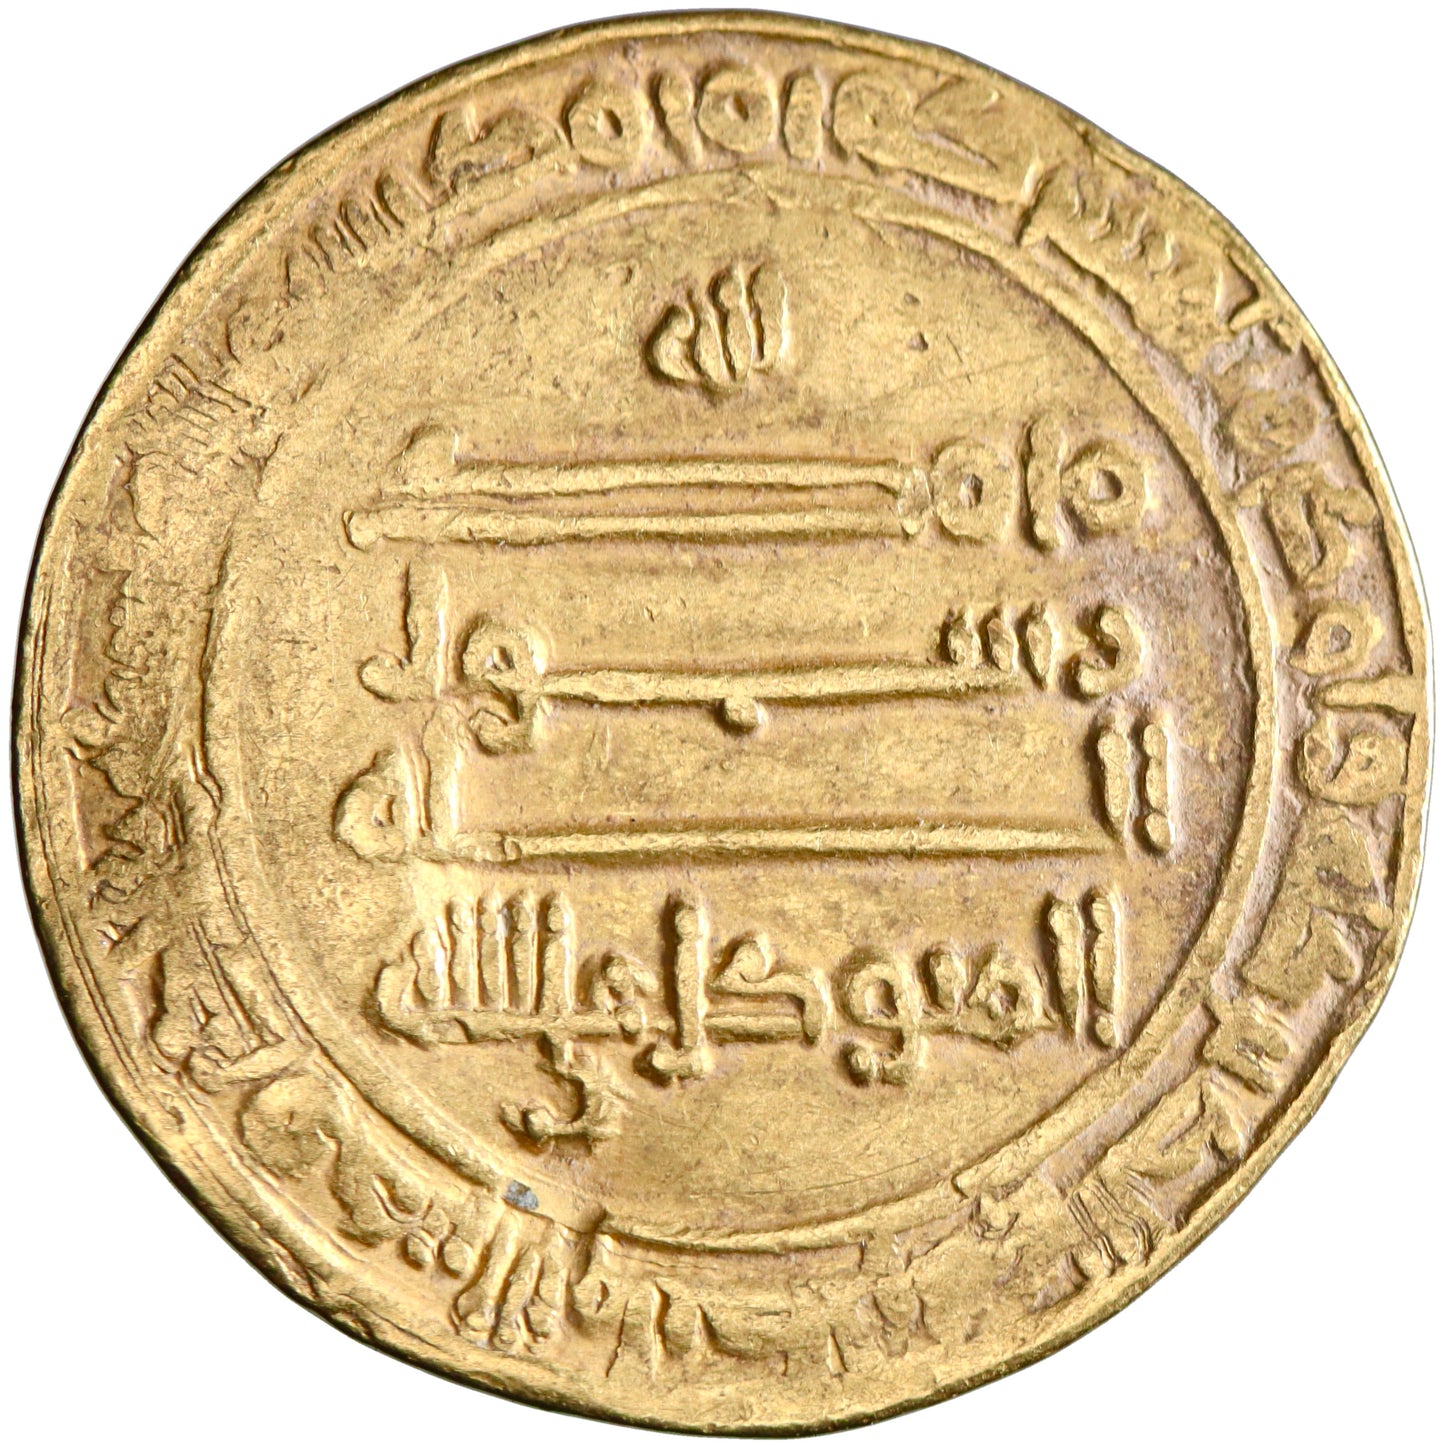 Abbasid, al-Mutawakkil, gold dinar, Misr (Egypt) mint, AH 242, citing al-Mu'tazz